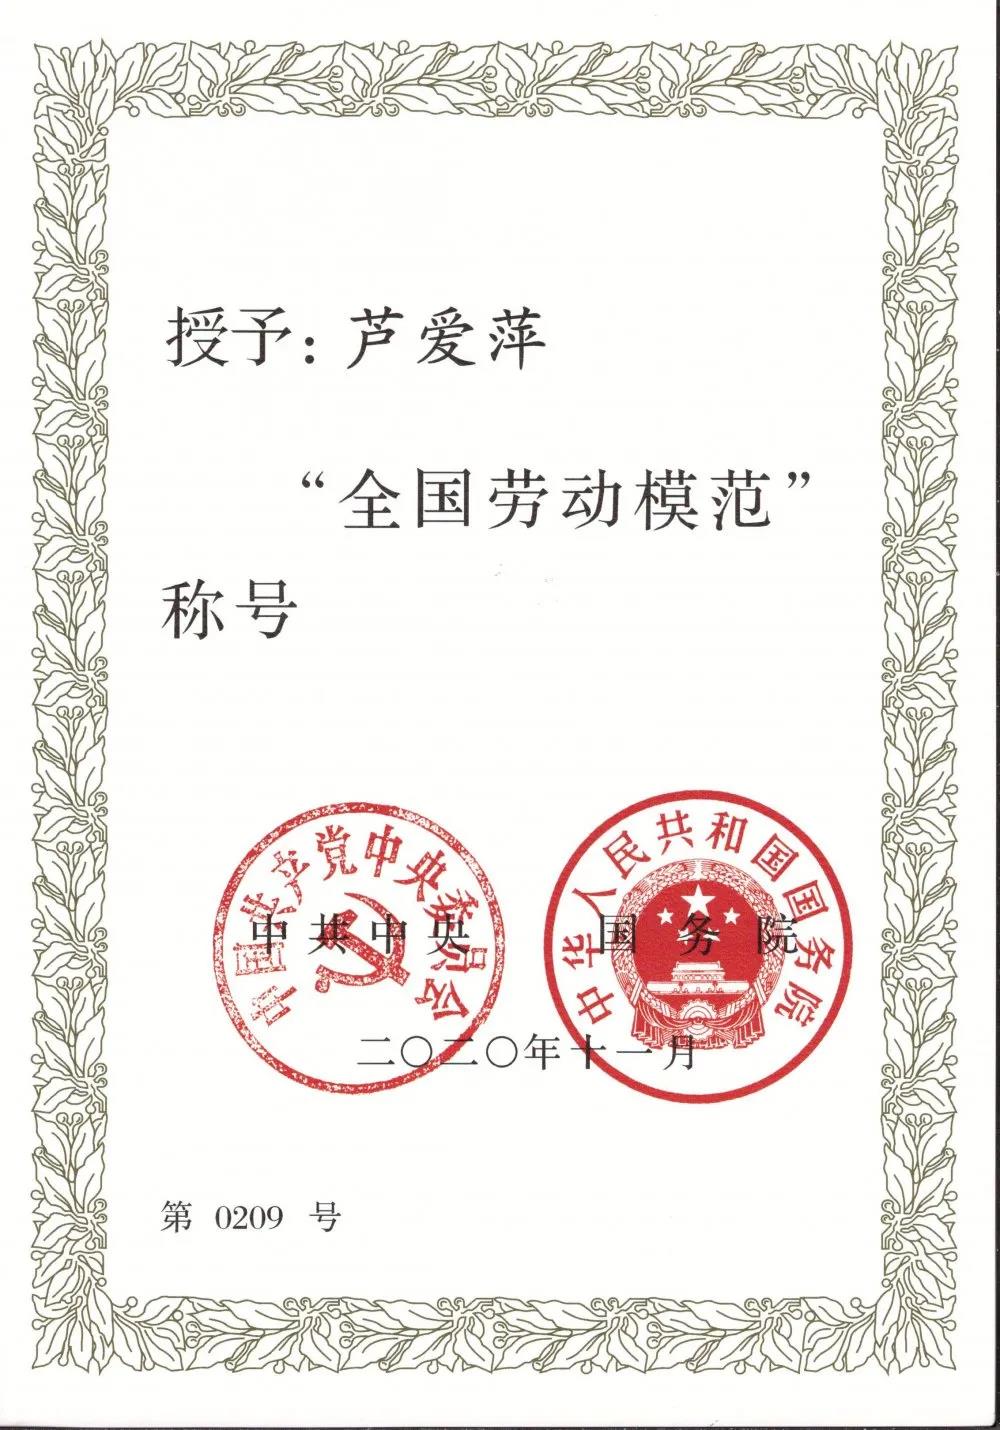 祝贺我公司“芦爱萍”荣获全国劳动模范荣誉称号！(图6)